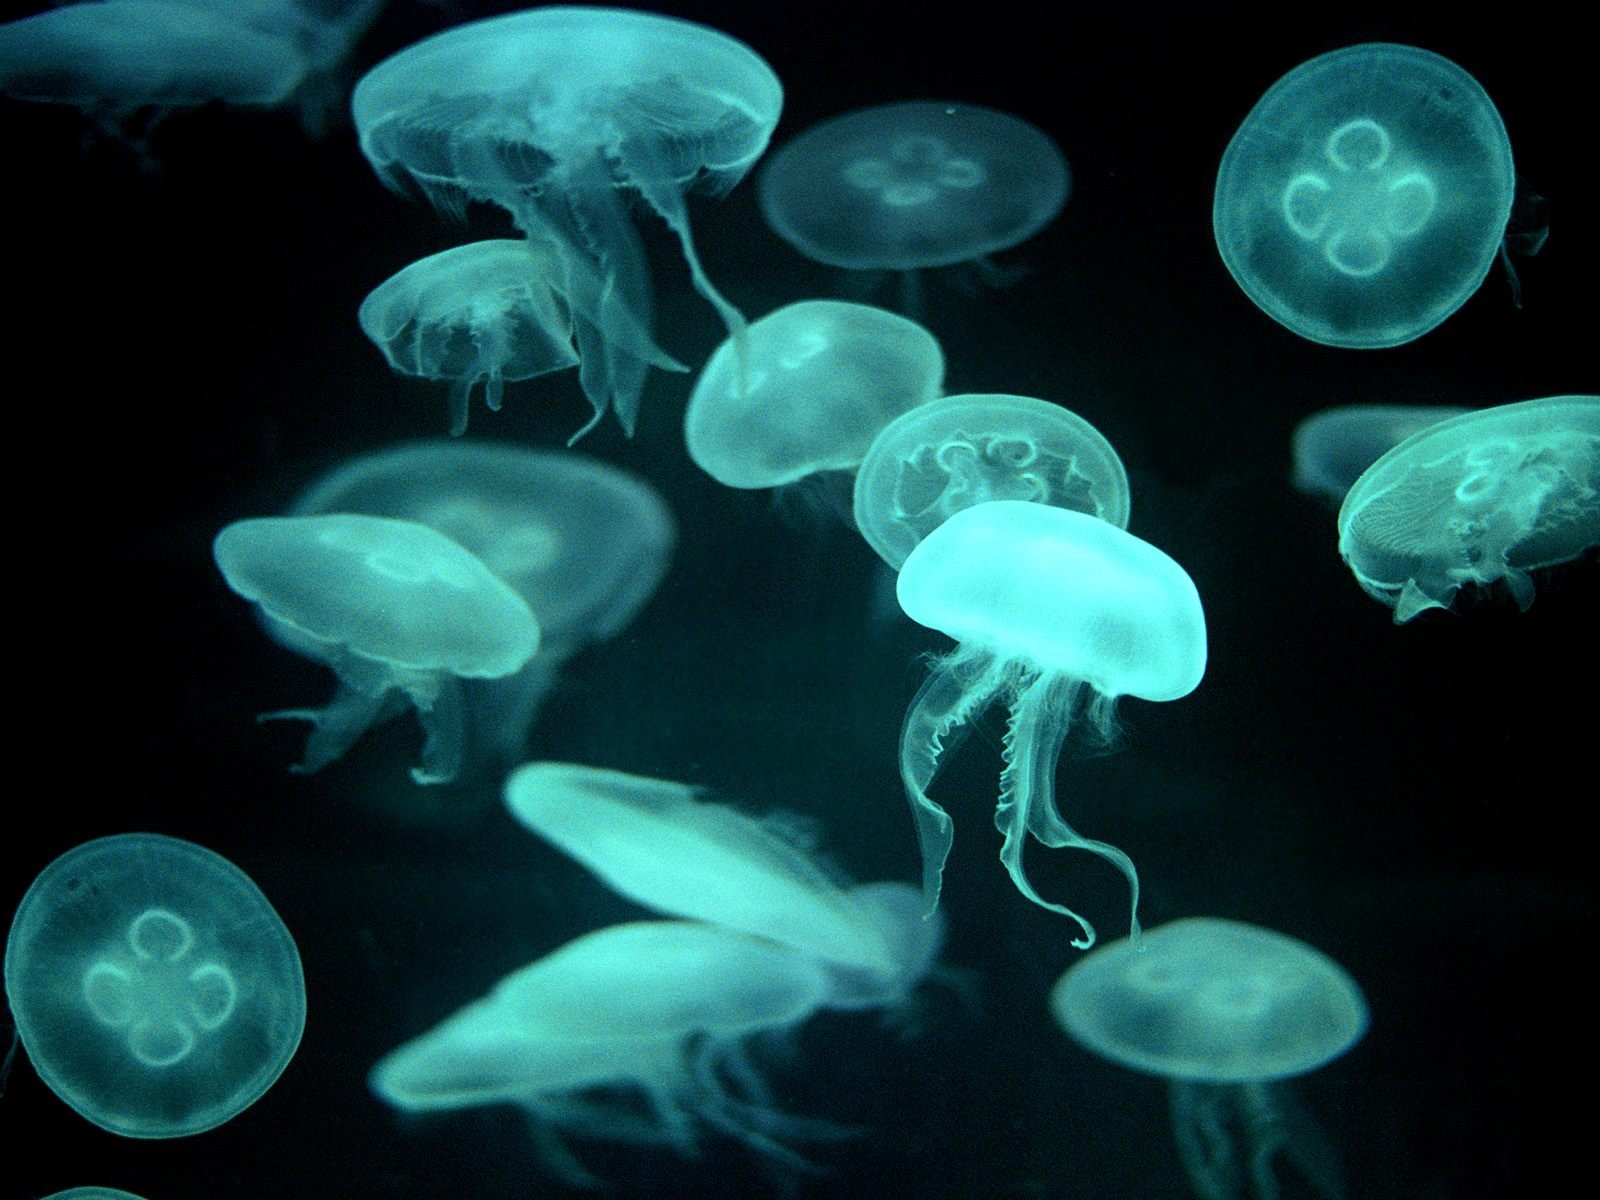 Fondos de Pantalla Mundo submarino Medusas Animalia descargar imagenes